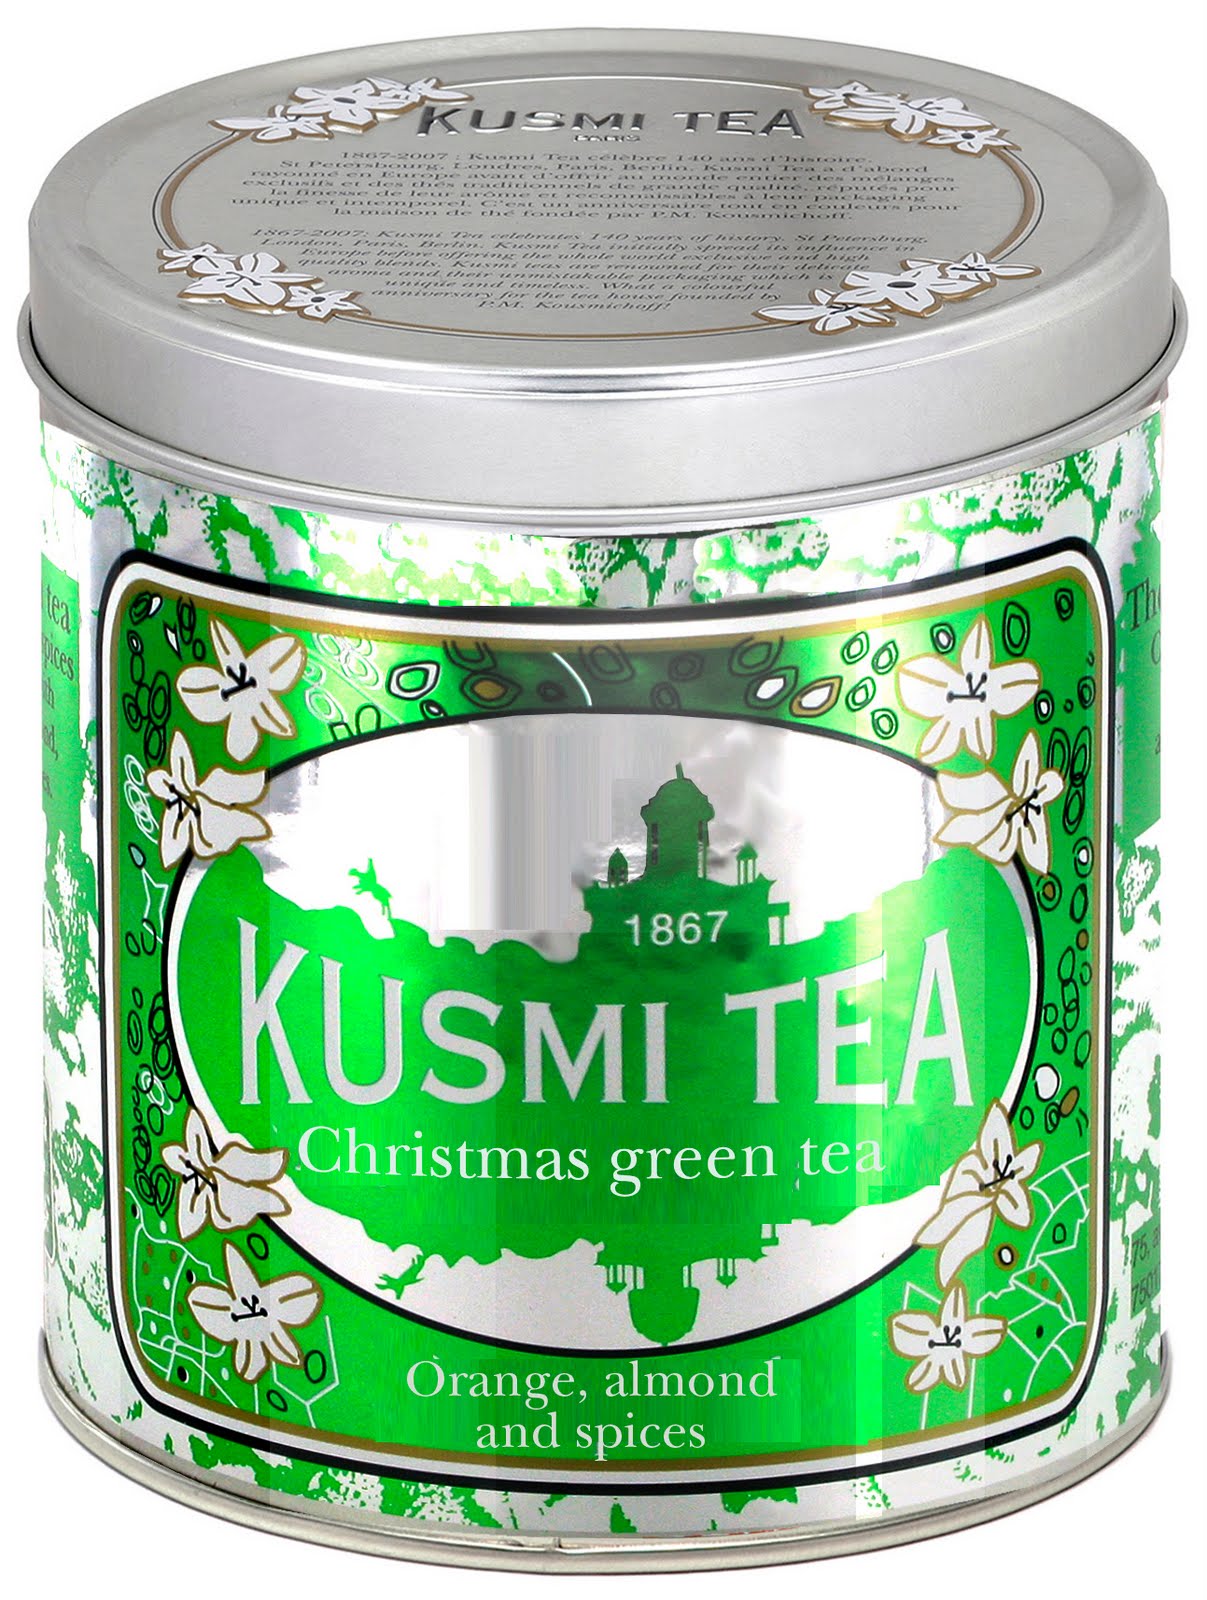 Зеленый чай в банке. Kusmi. Кусми чай. Green Tea банка.